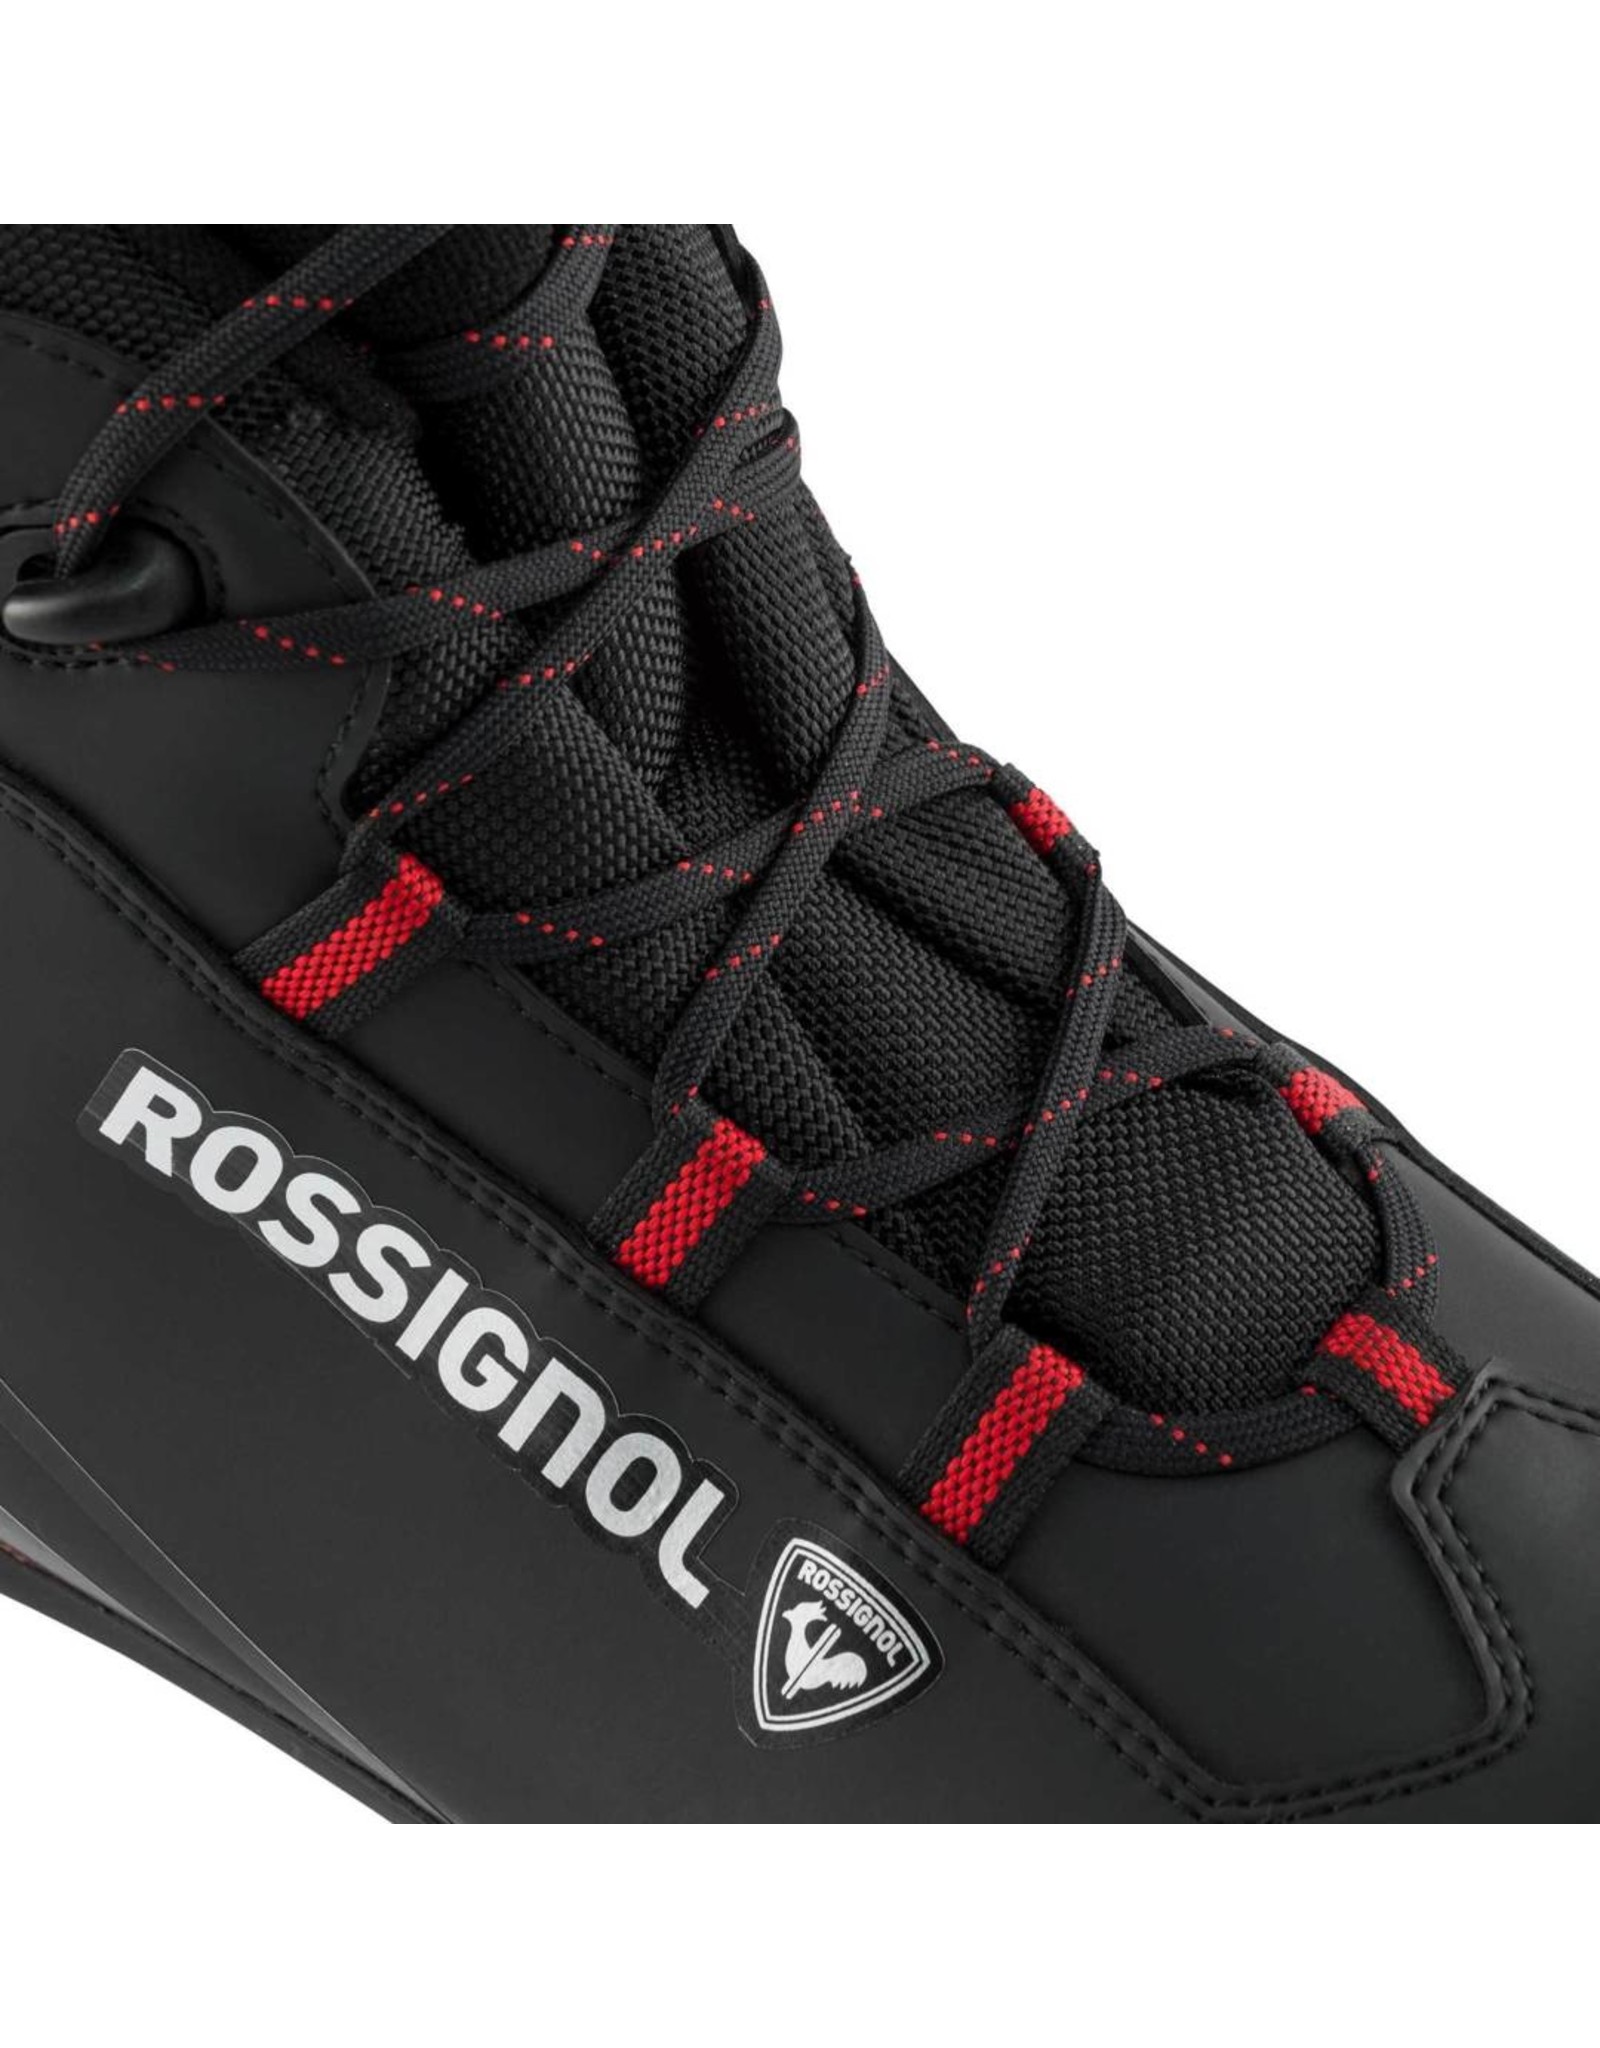 Rossignol Rossignol F-1 Nordic Ski Boot